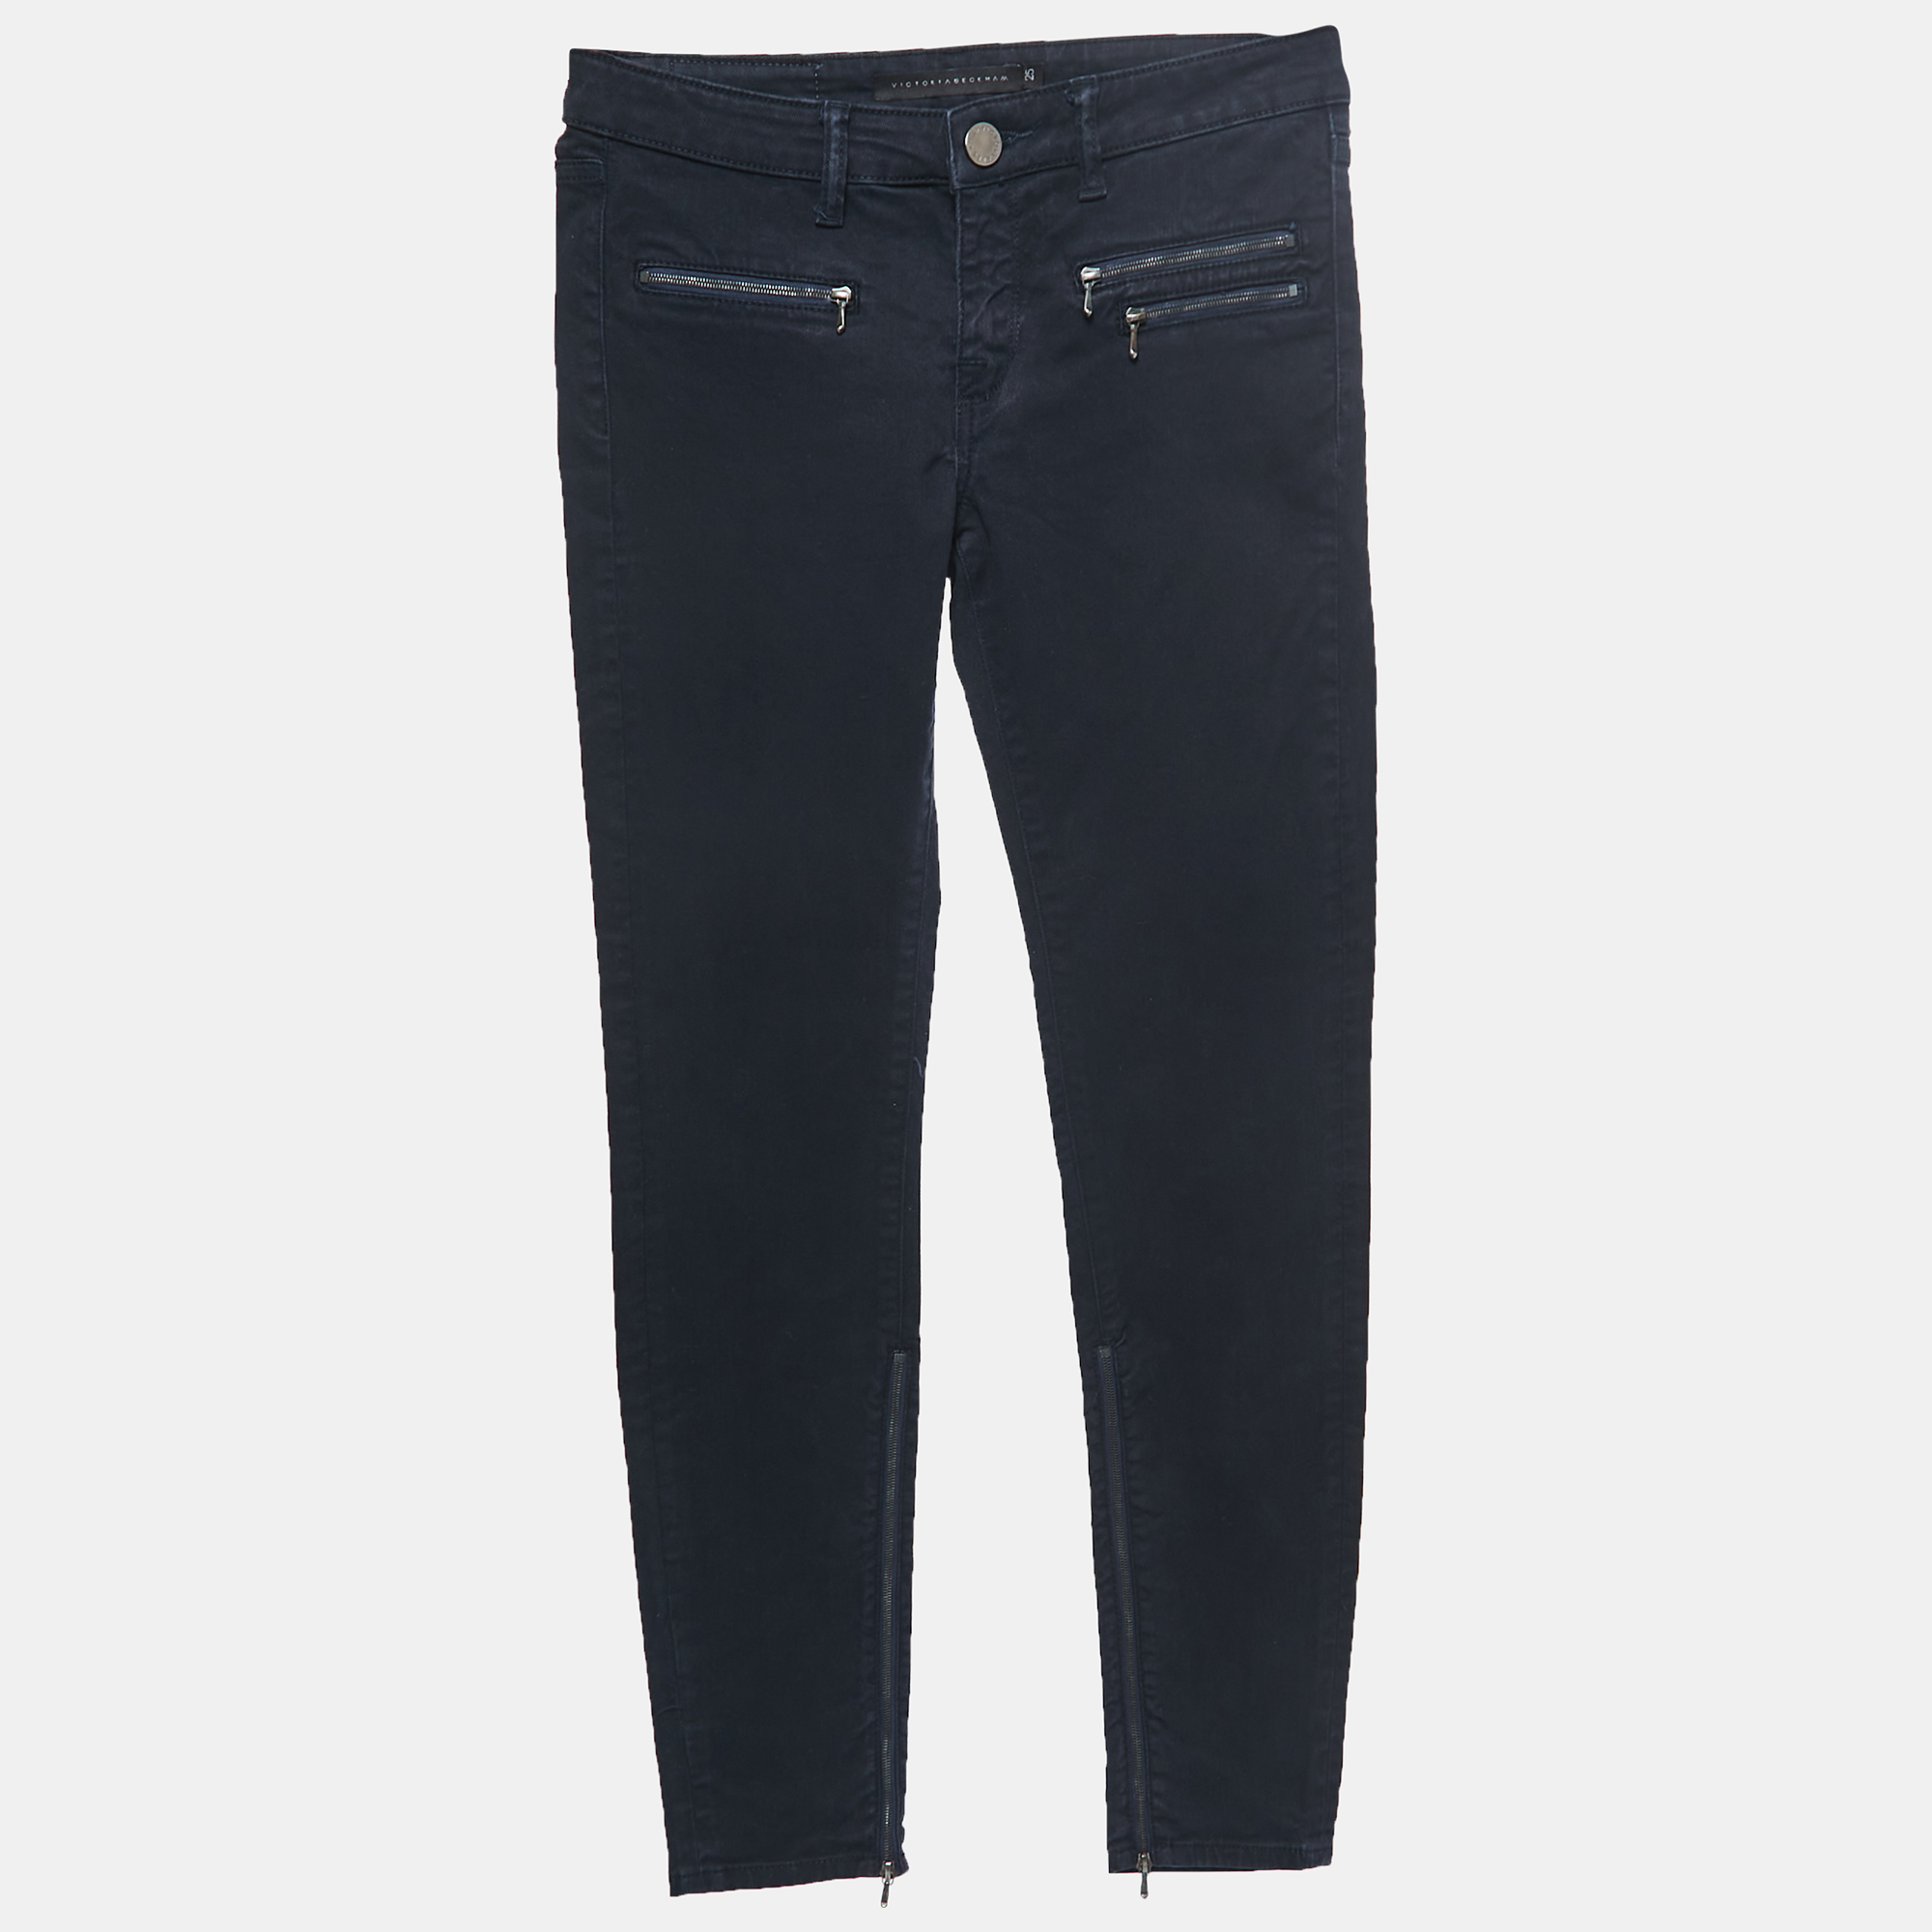 

Victoria Beckham Navy Blue Denim Slim Fit Jeans S Waist 25"